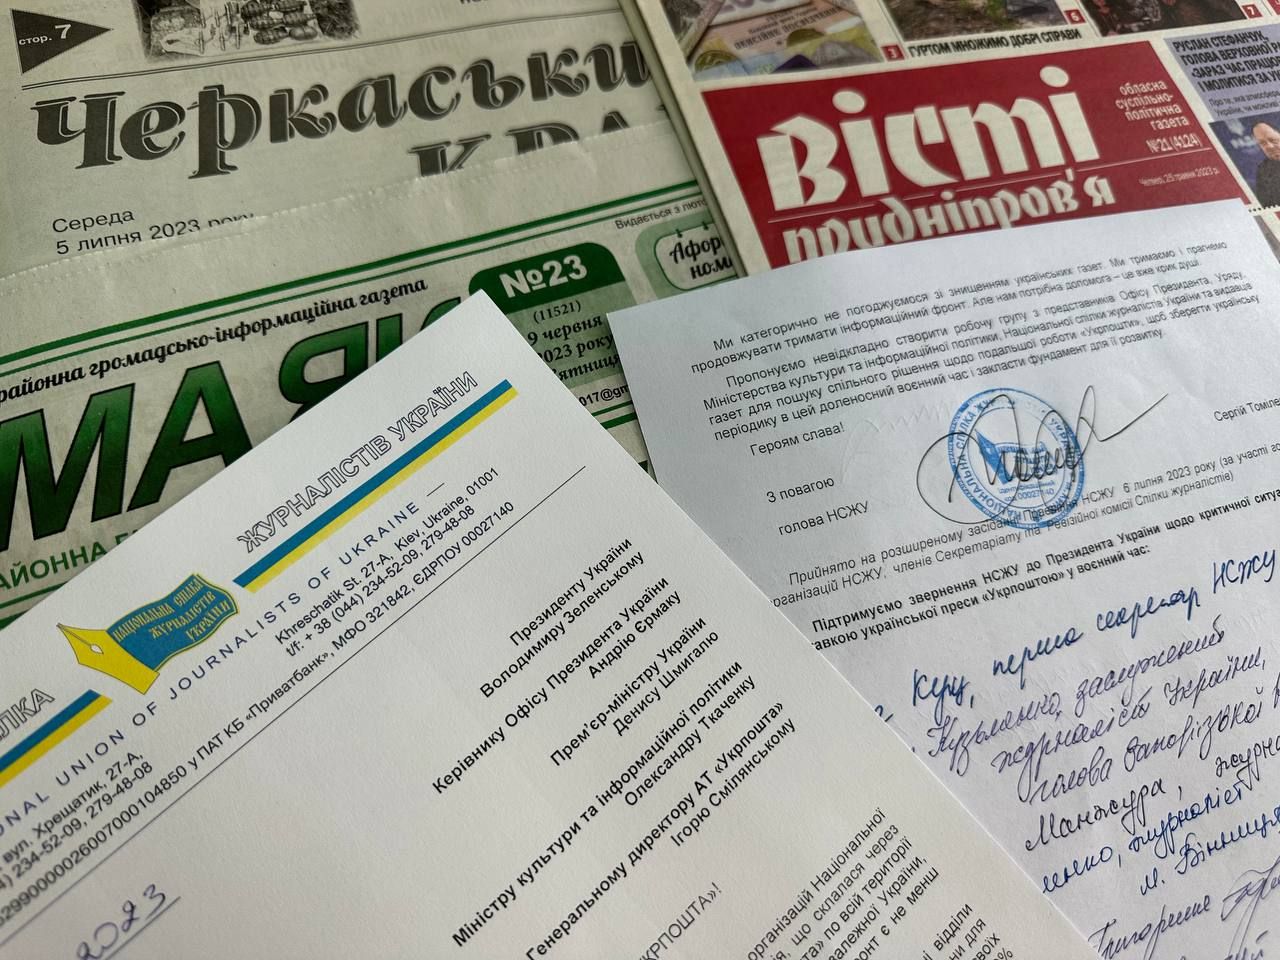 Масове звільнення листонош зупиняє поштову доставку газет в Україні - НСЖУ